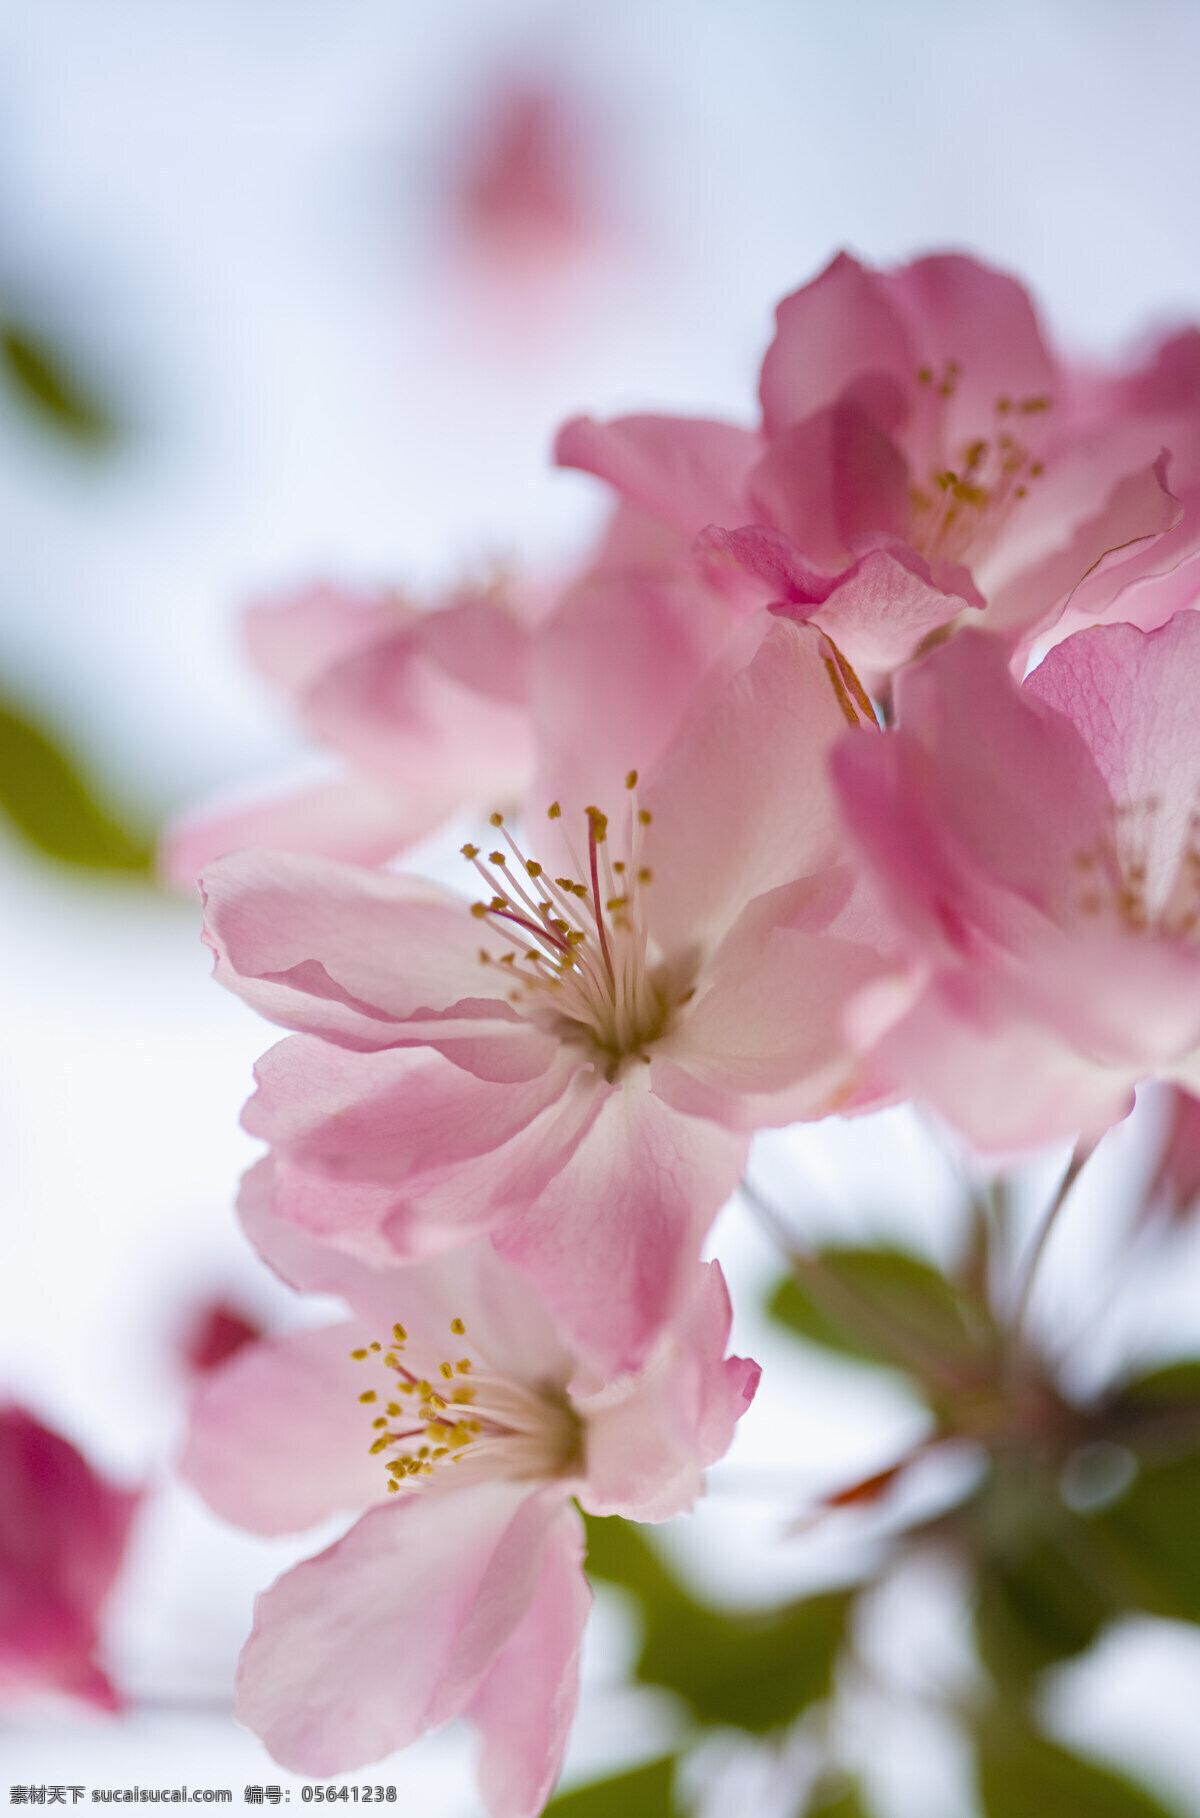 粉色 樱花 特写 高清图片 竖构图 自然 植物 仅植物 日光 户外 清新 白昼 风景 纯洁 粉红色的小花 生命 花 微距摄影 花的特写 绽放 盛开 花草树木 生物世界